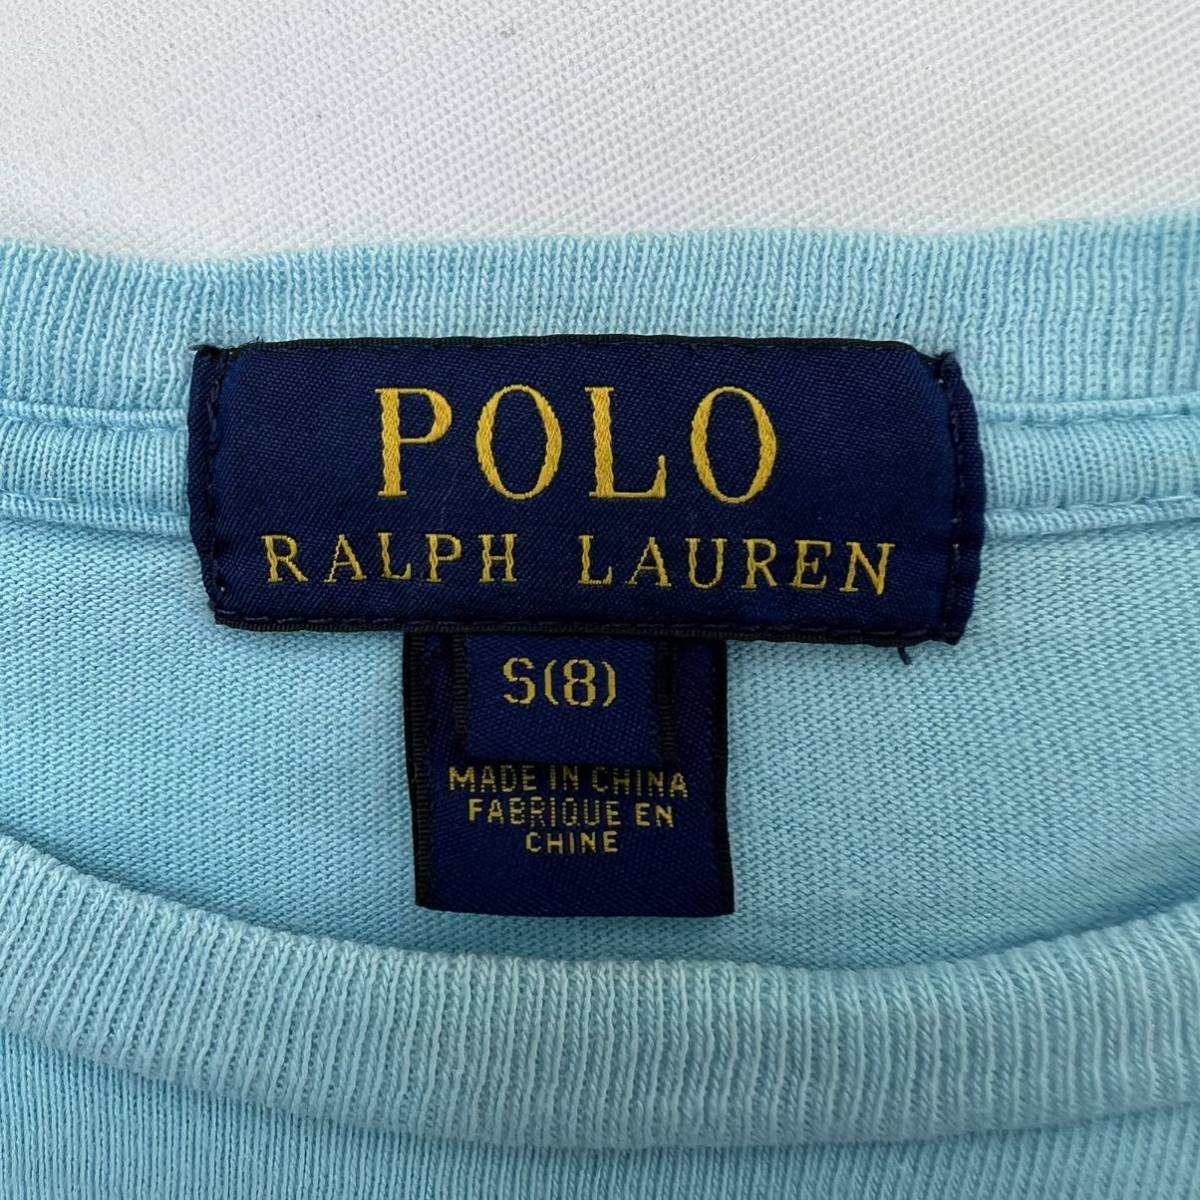 POLO RALPH LAUREN * голубой желтый вышивка Logo * короткий рукав футболка женский S взрослый casual черновой ko-te Polo Ralph Lauren #S1783